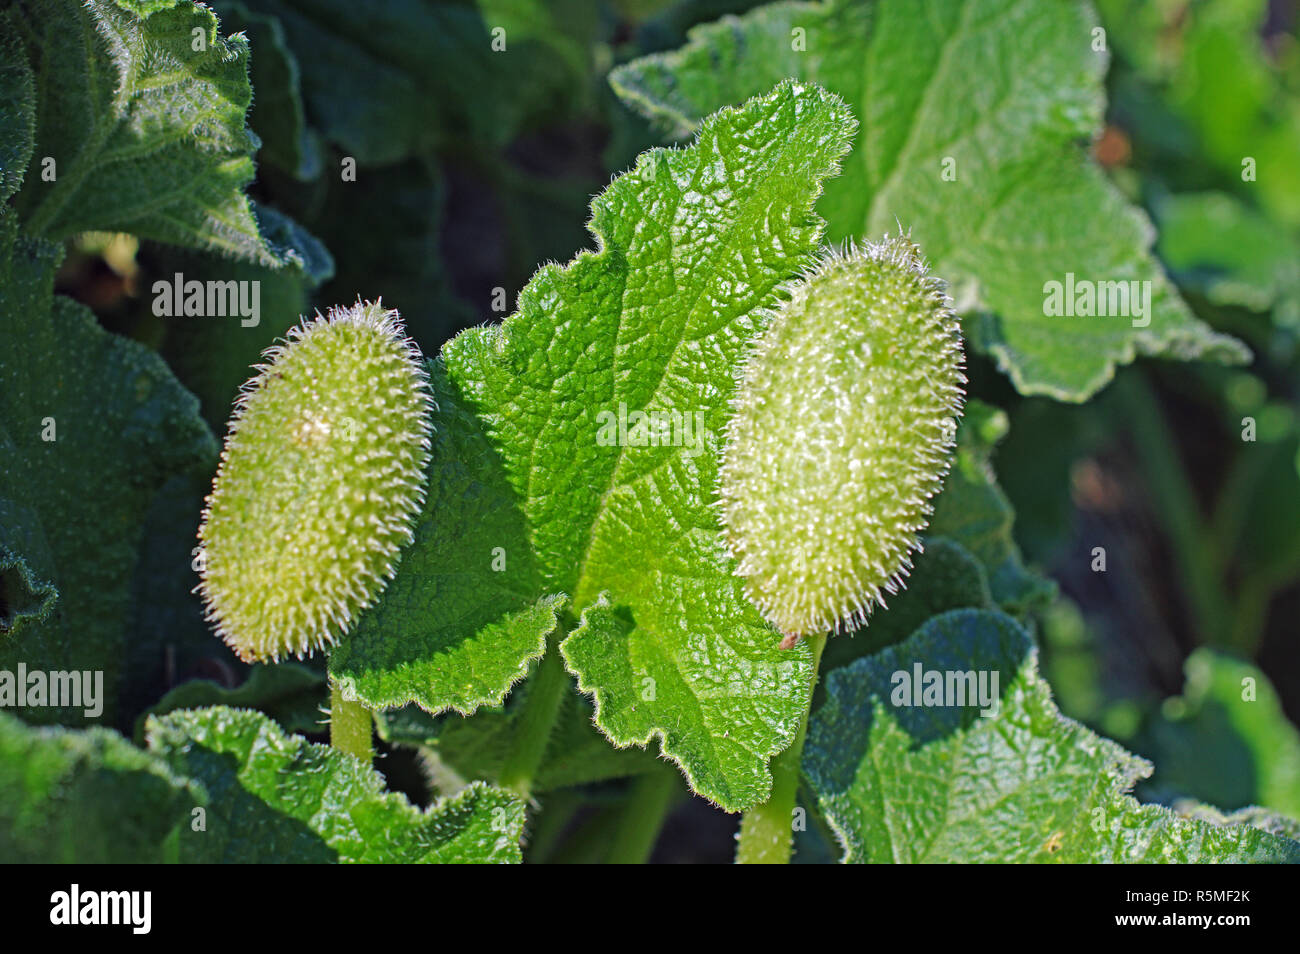 fruits of Ecballium elaterium, the Squirting cucumber, family Cucurbitaceae Stock Photo